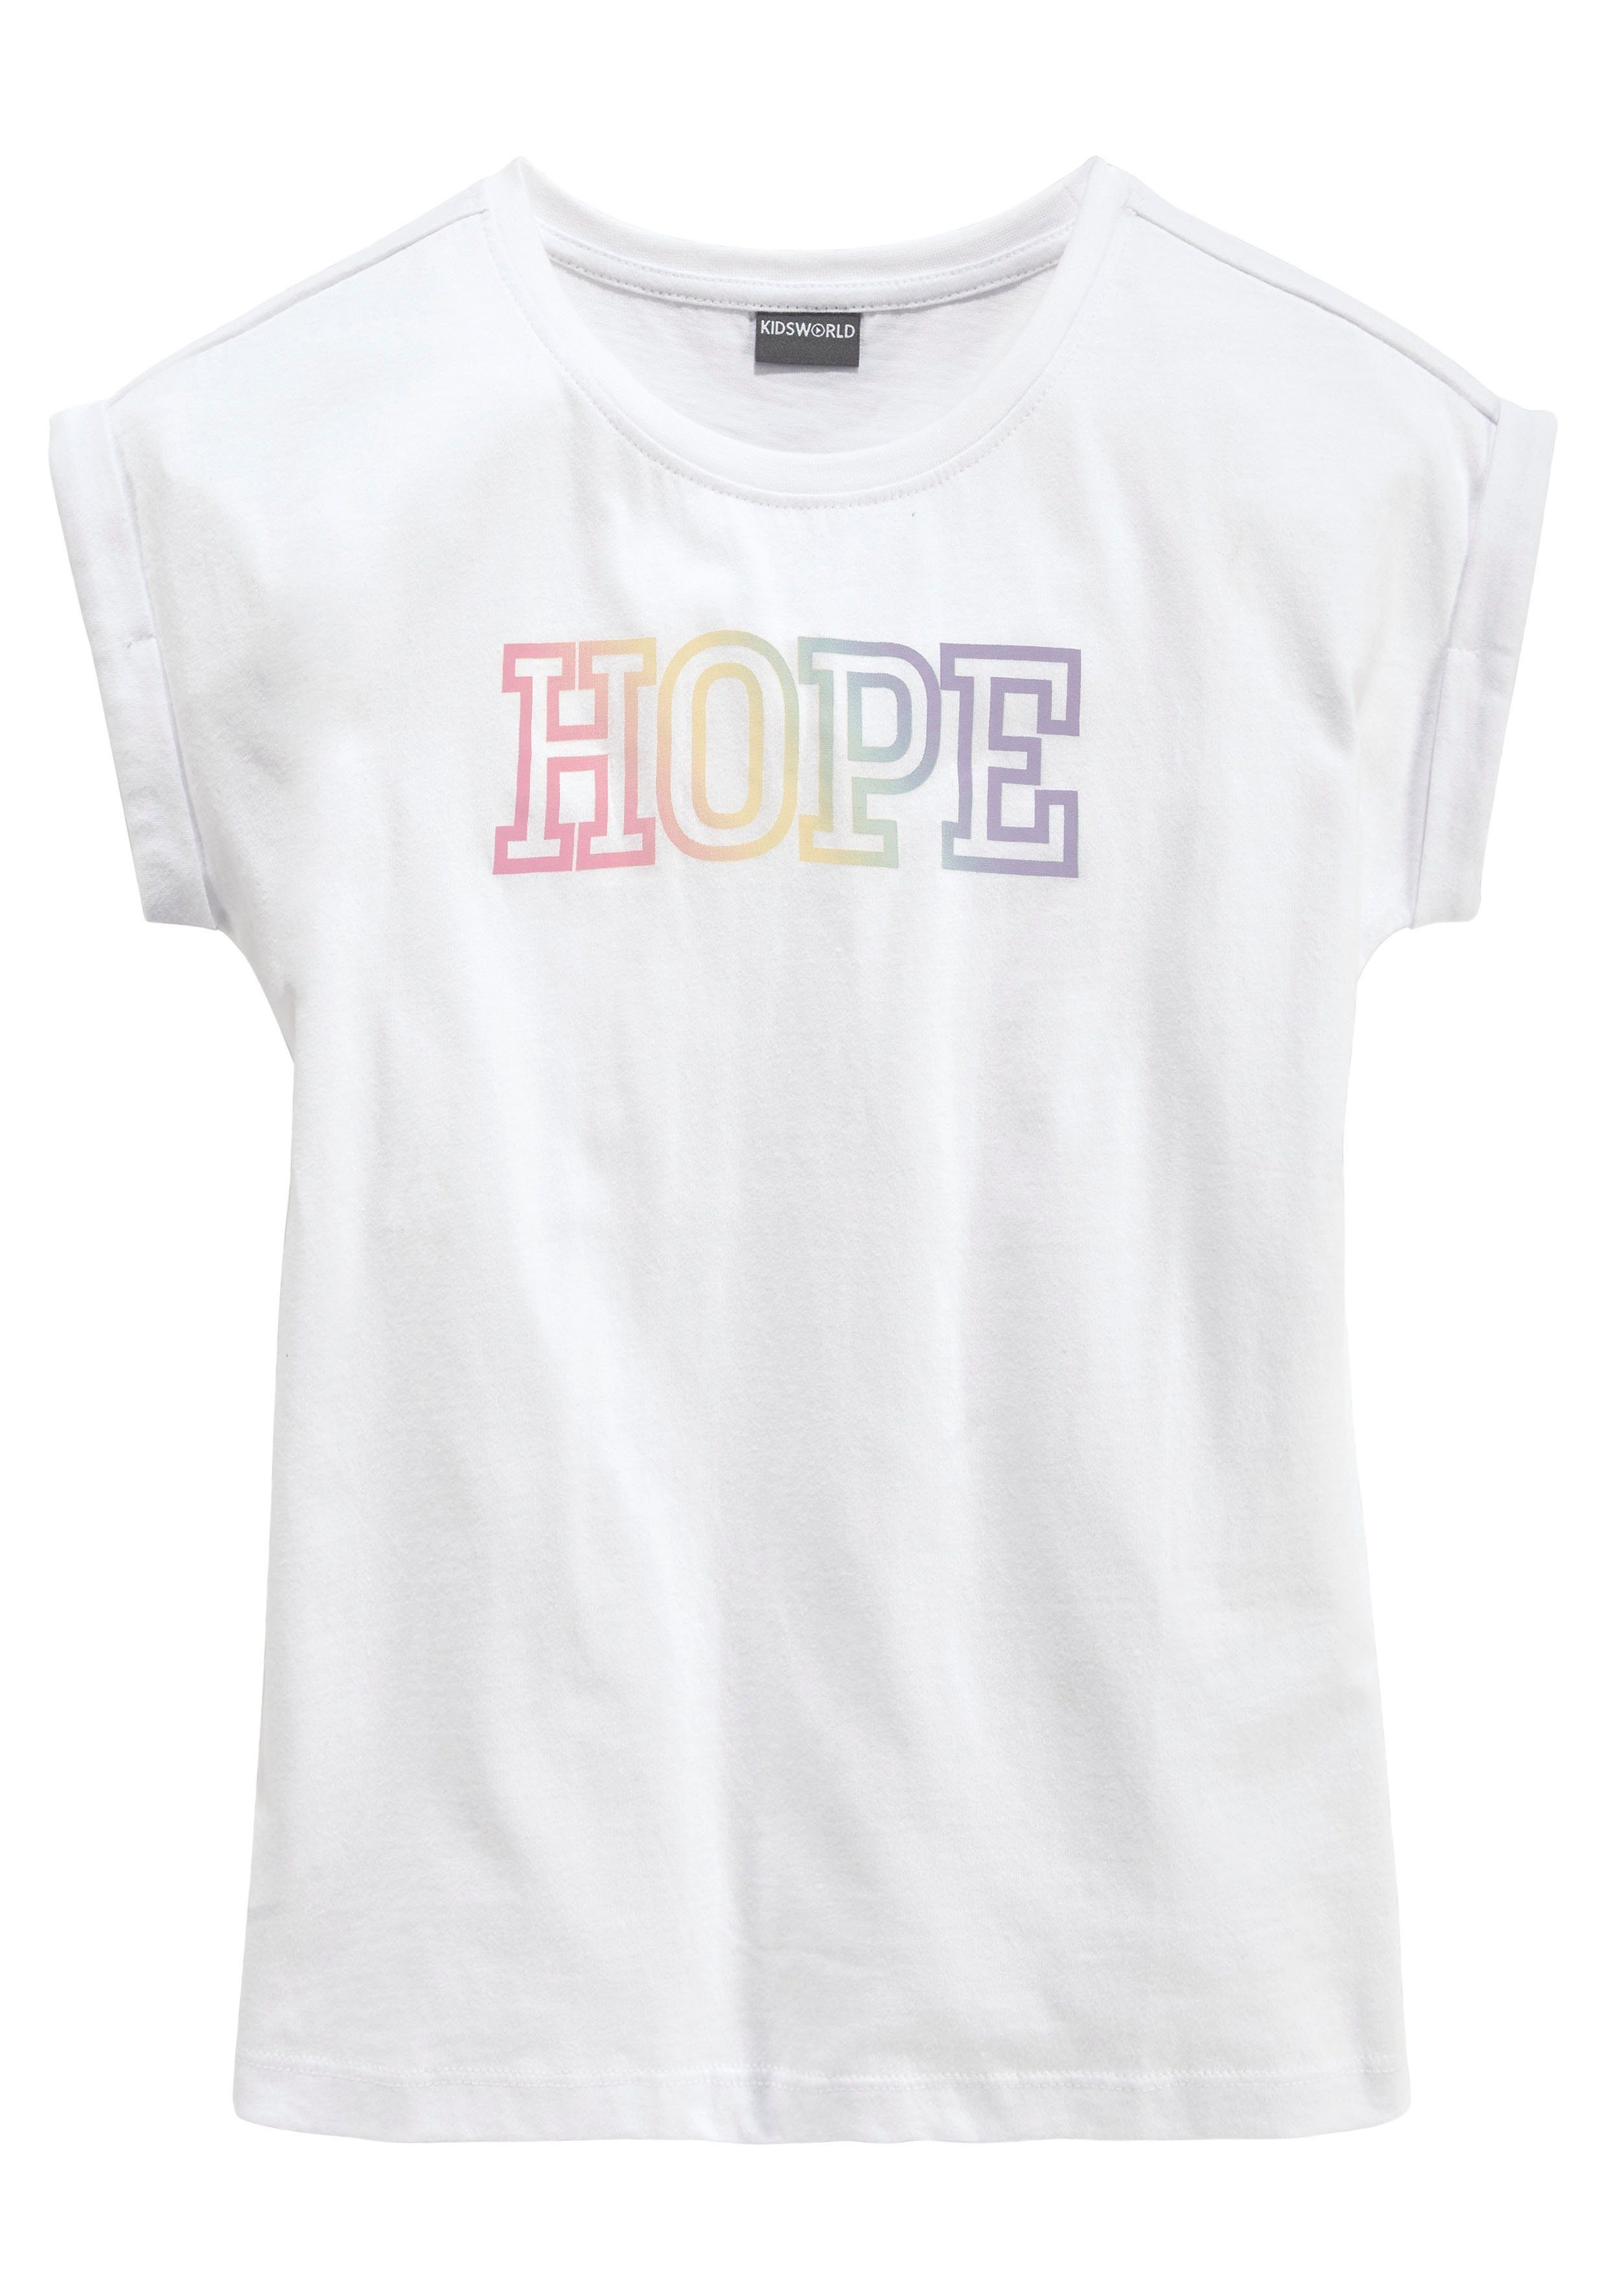 KIDSWORLD mit HOPE Statementdruck T-Shirt